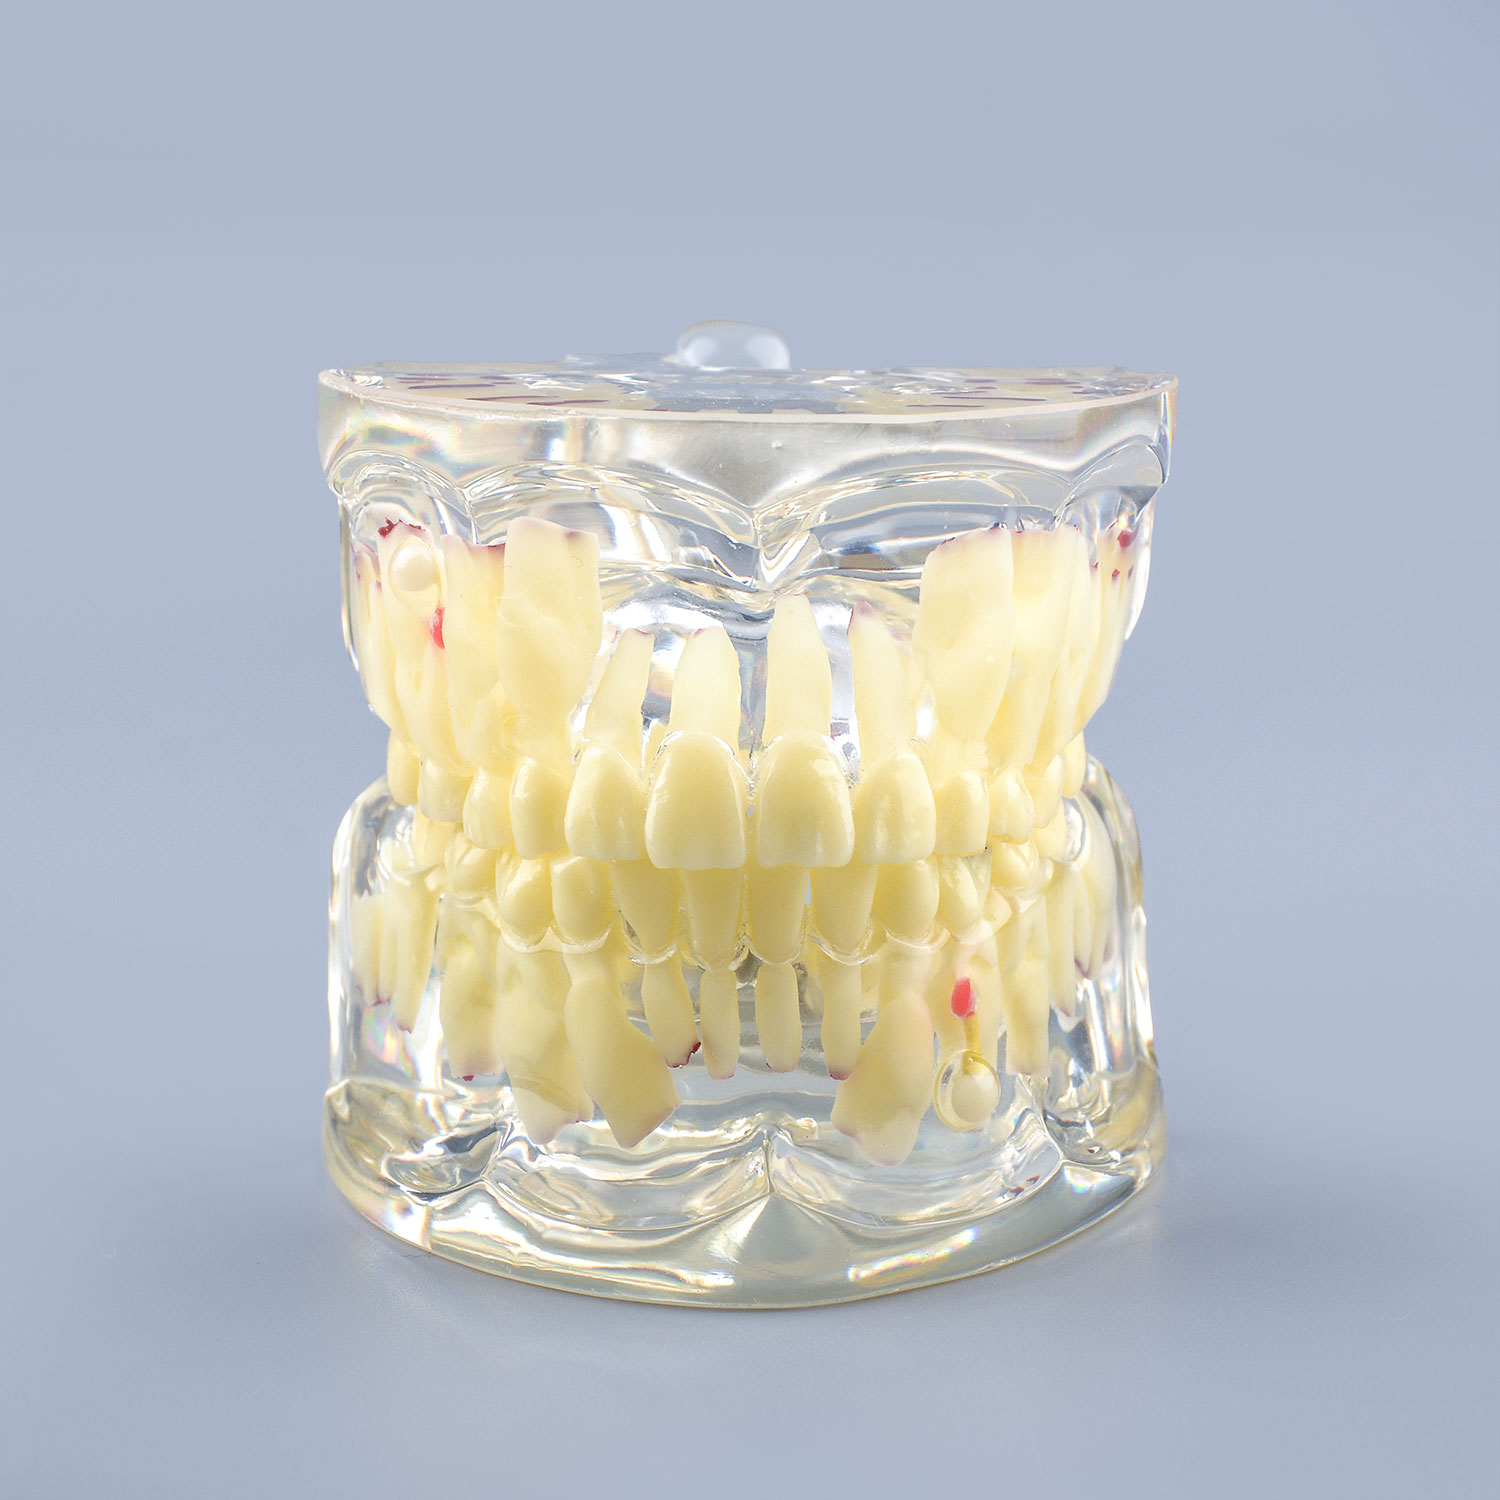 Clear Teaching Disease Teeth Model with Deciduous Teeth